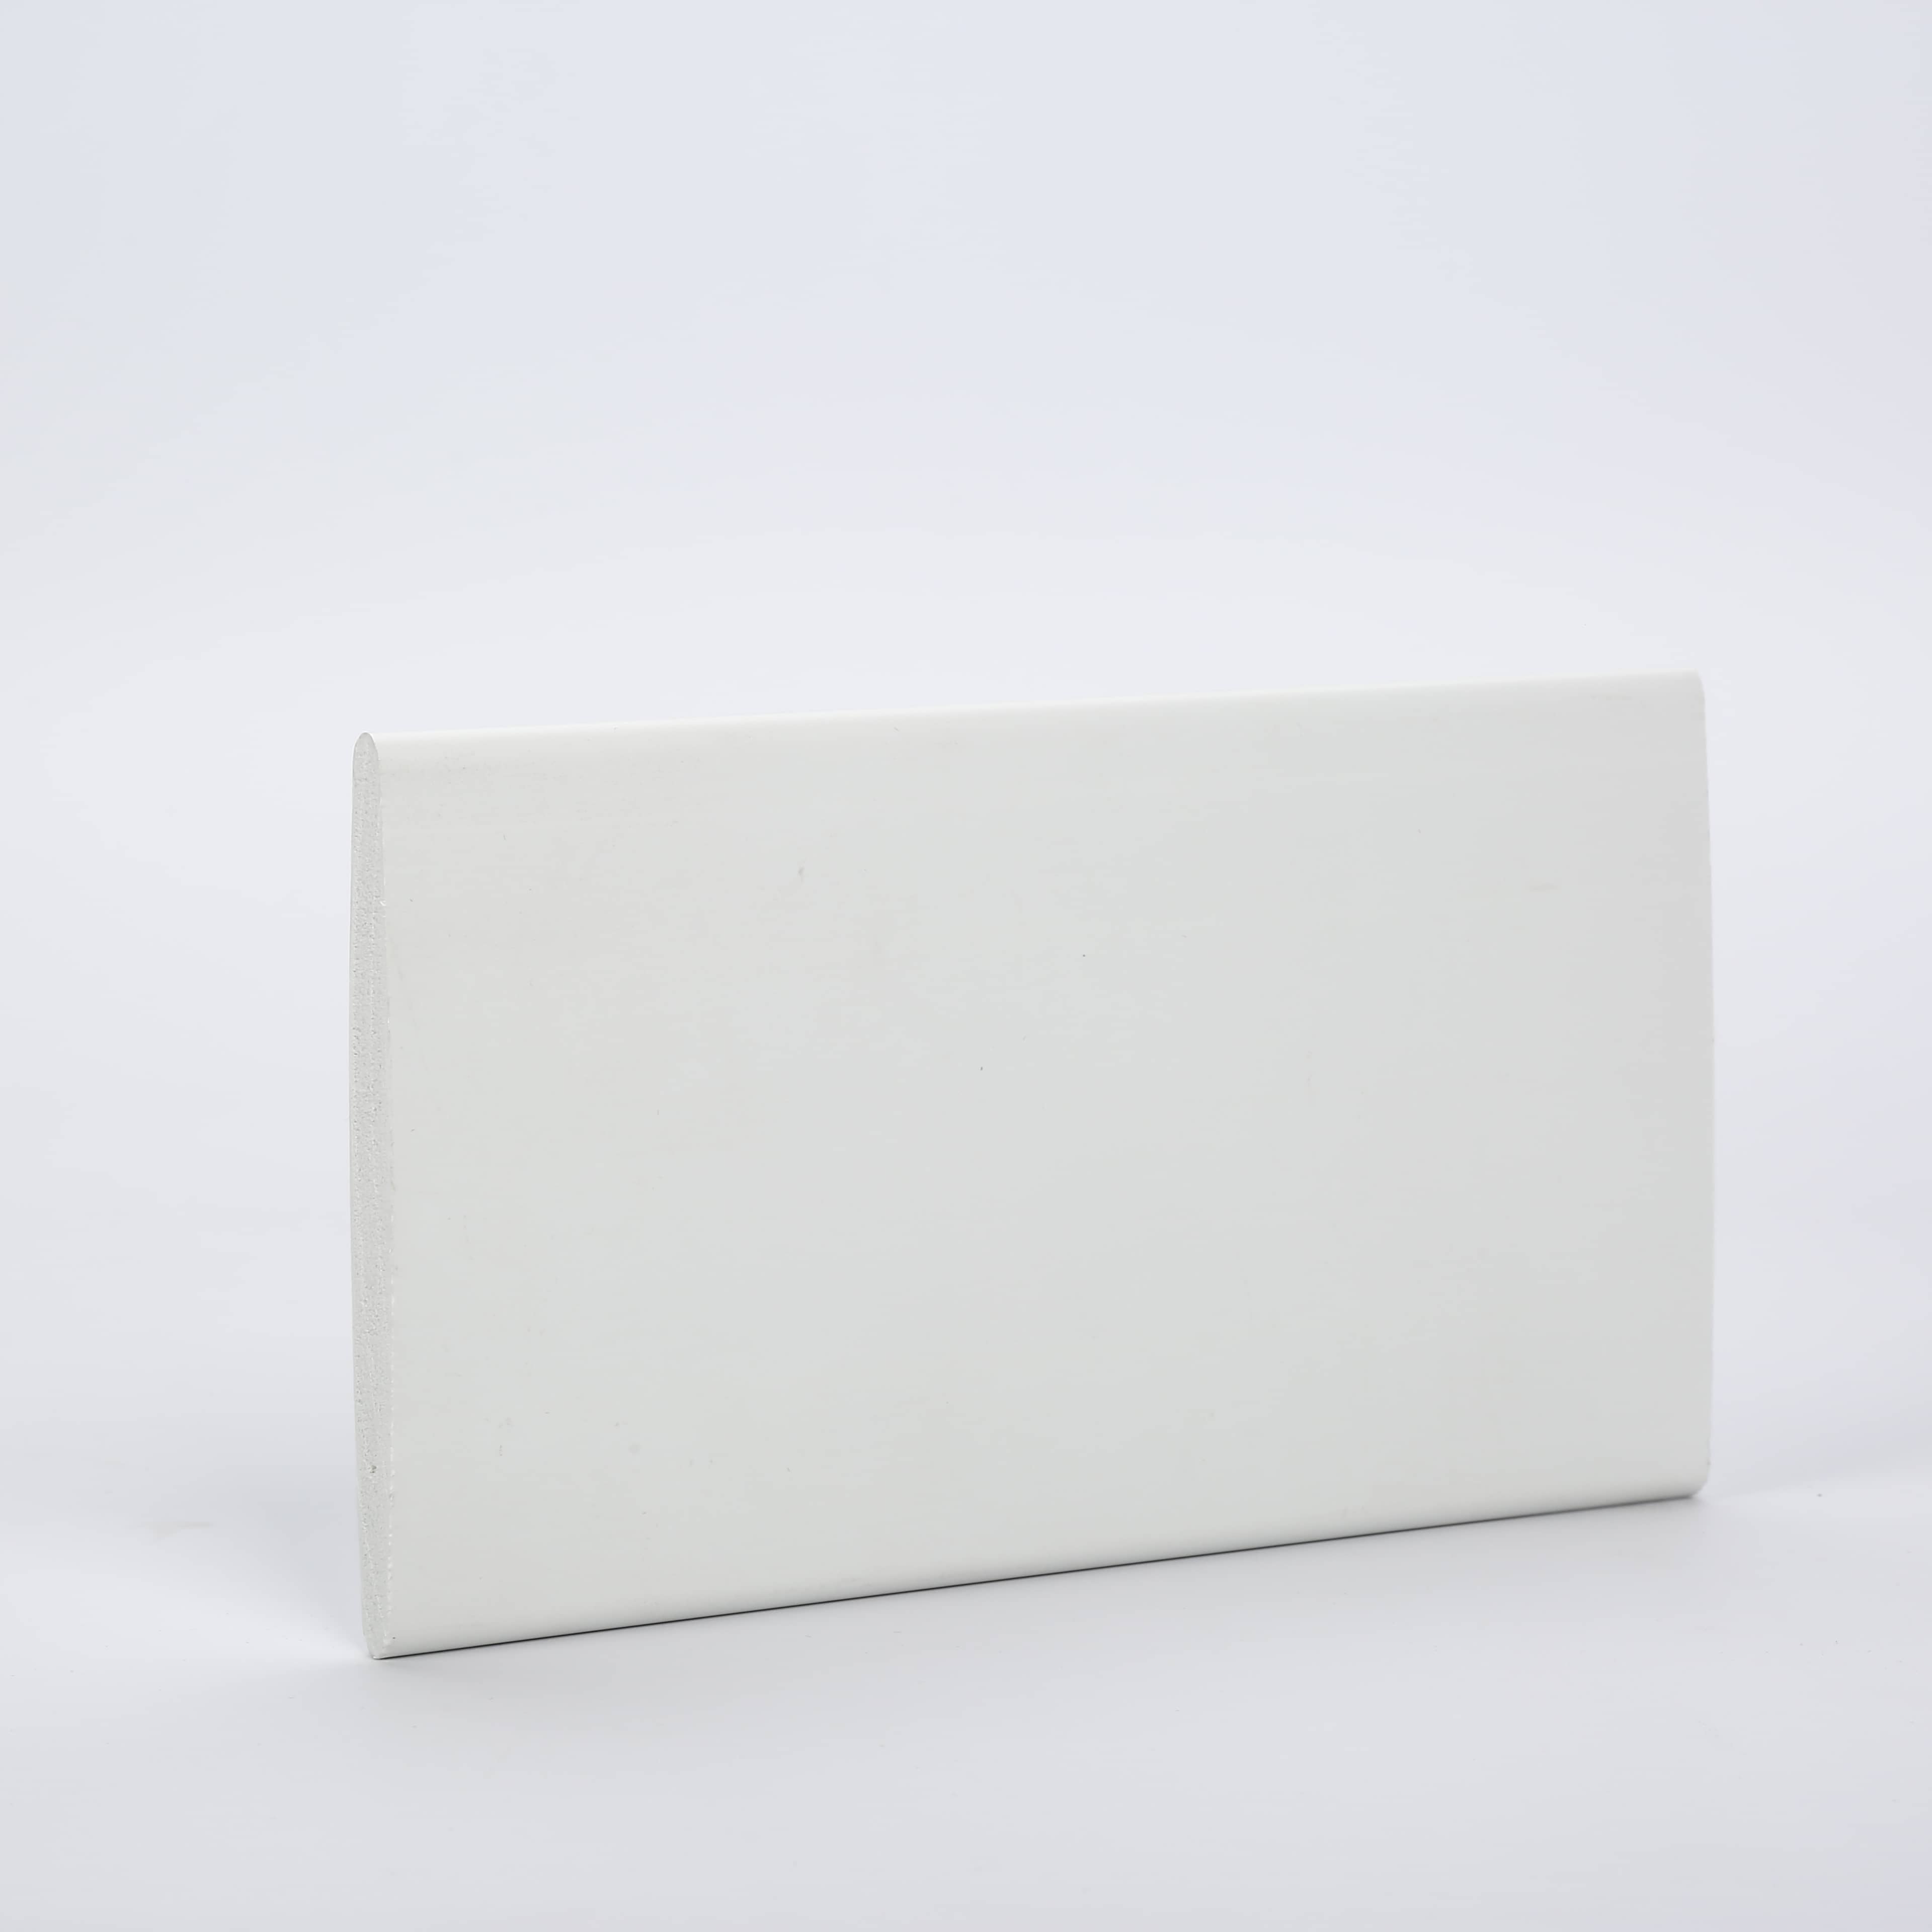 Termite ProofPVC Easy Foam Profile